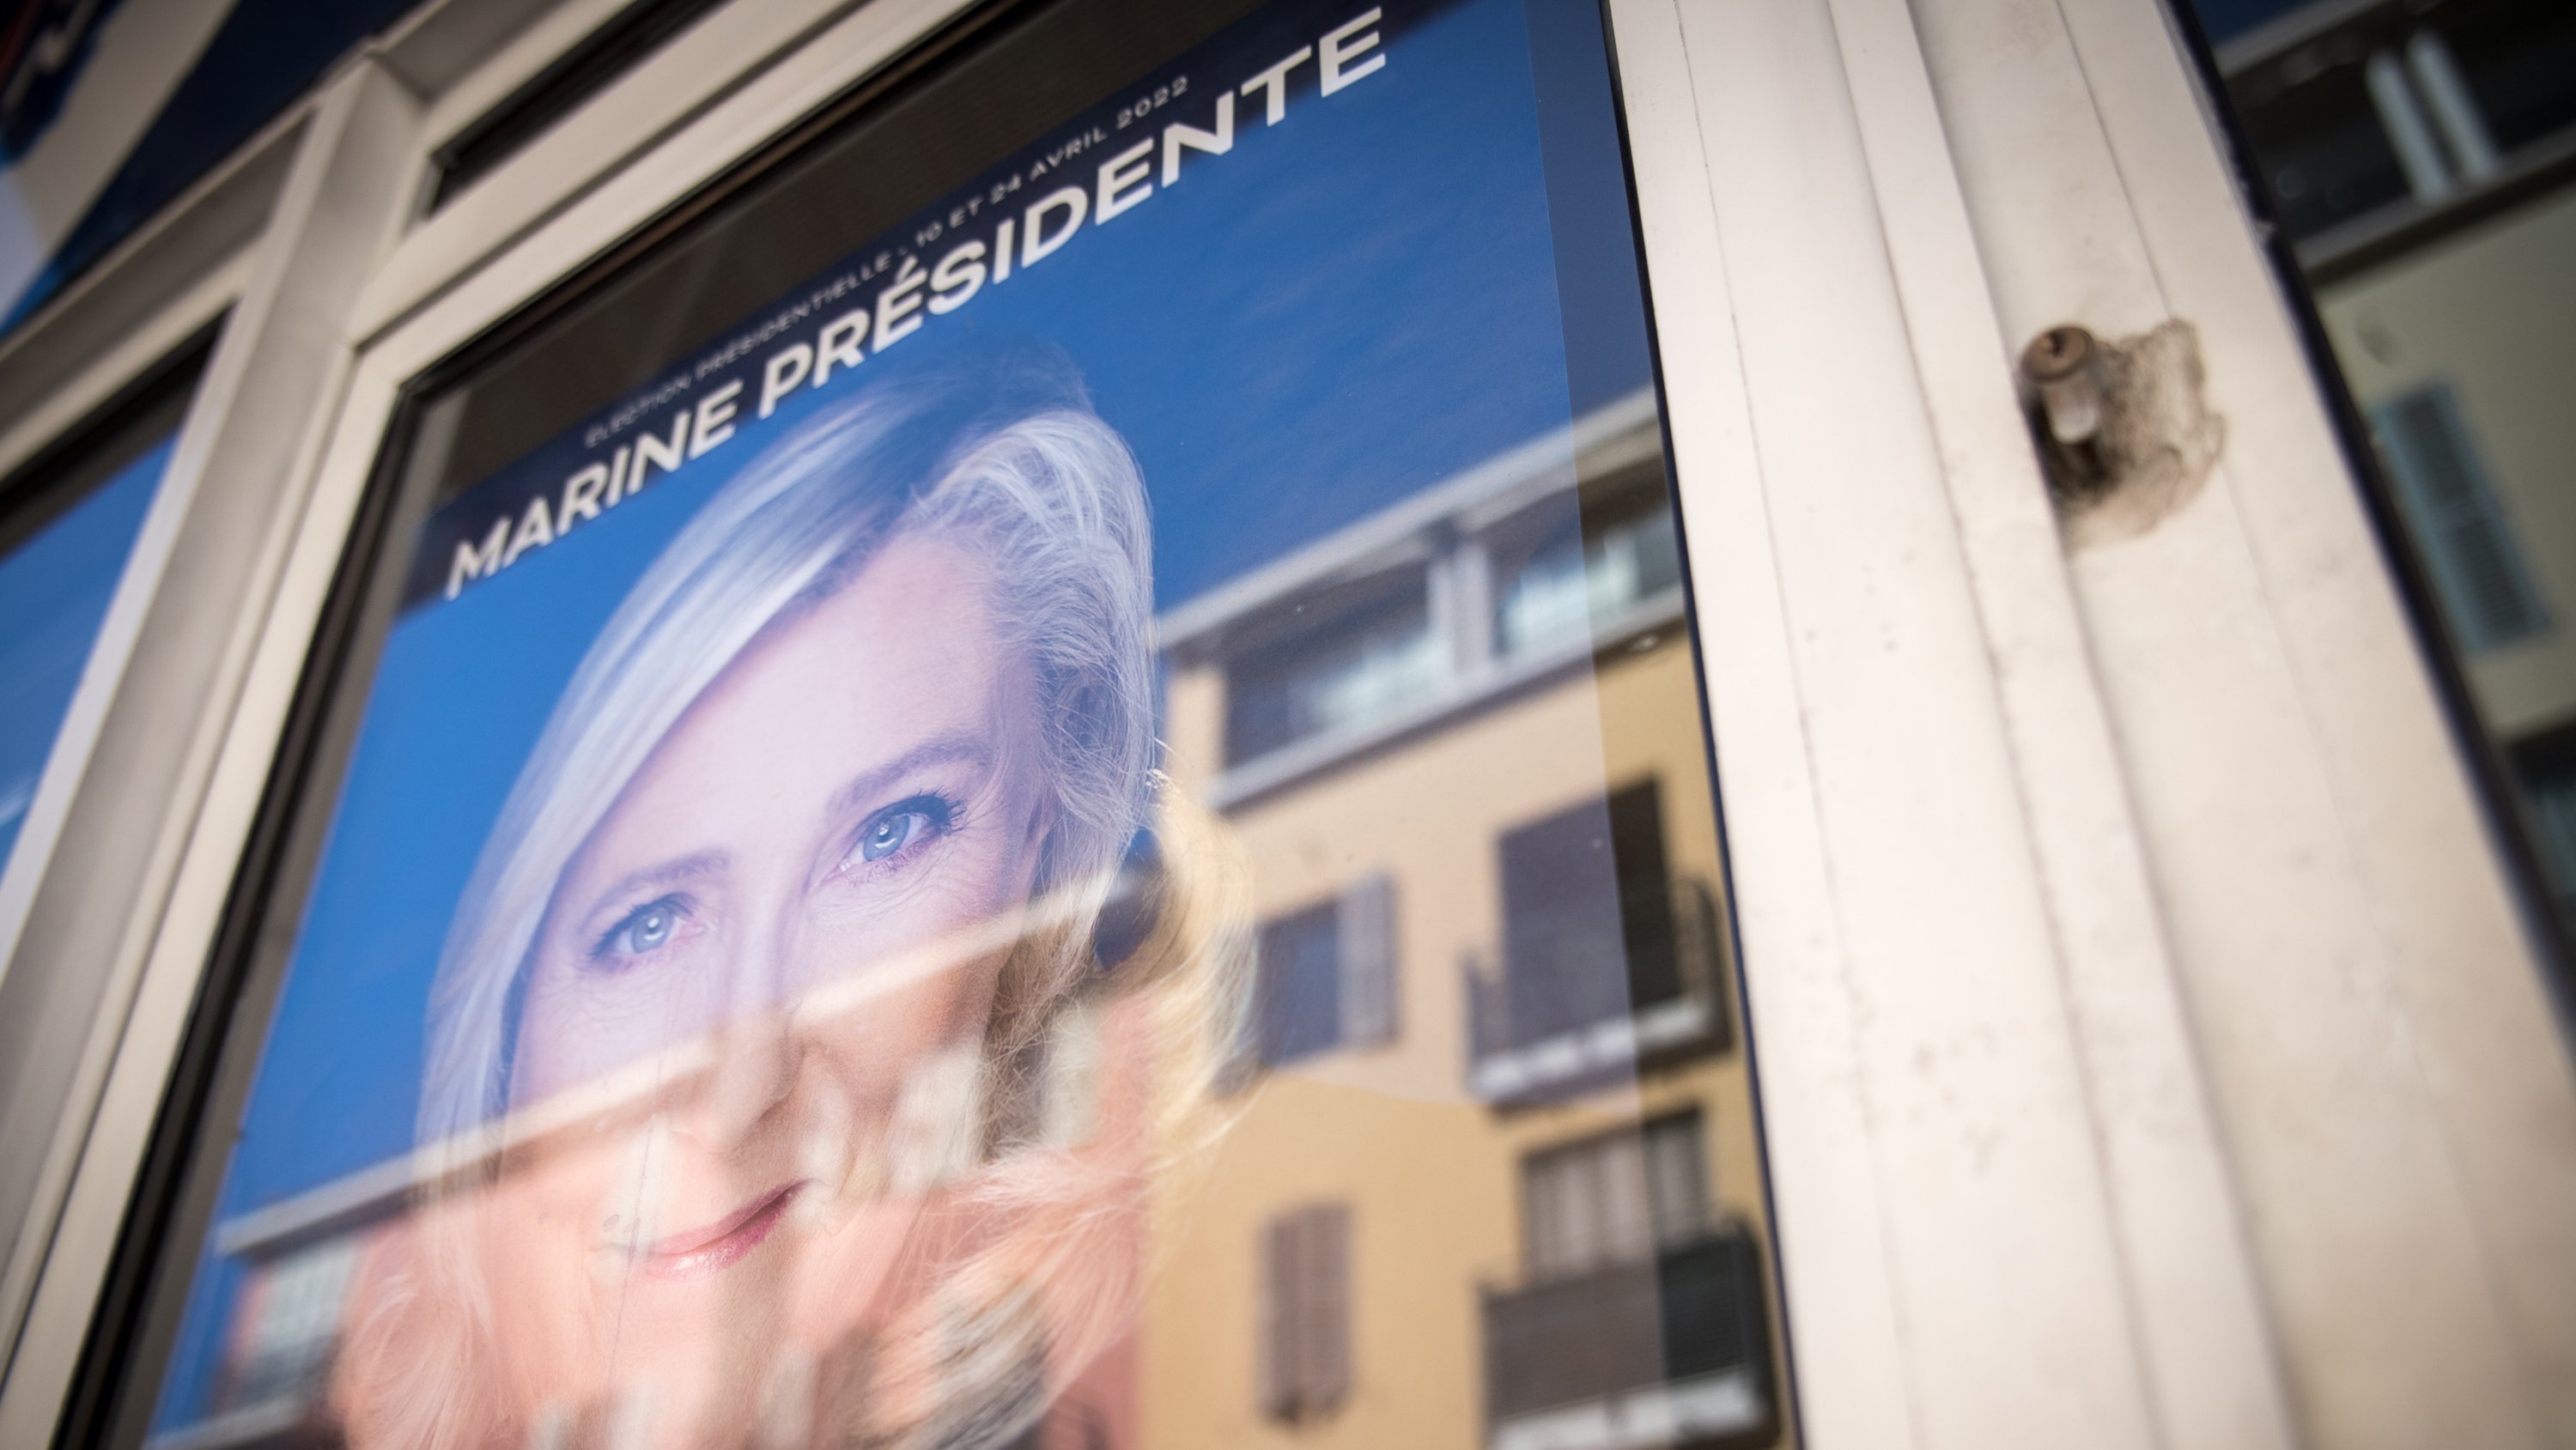 Reportagem na cidade de Fréjus, em França, uma cidade que apoia maioritáriamente Marine Le Pen, a principal candidata às presidênciais de francêsas, a seguir a Emmanuel Macron, atual presindente da Républica de França. As eleições para a 1ª volta realizam-se no próximo dia 10 de Abril. 7 de Abril de 2022 Fréjus, França TOMÁS SILVA/OBSERVADOR